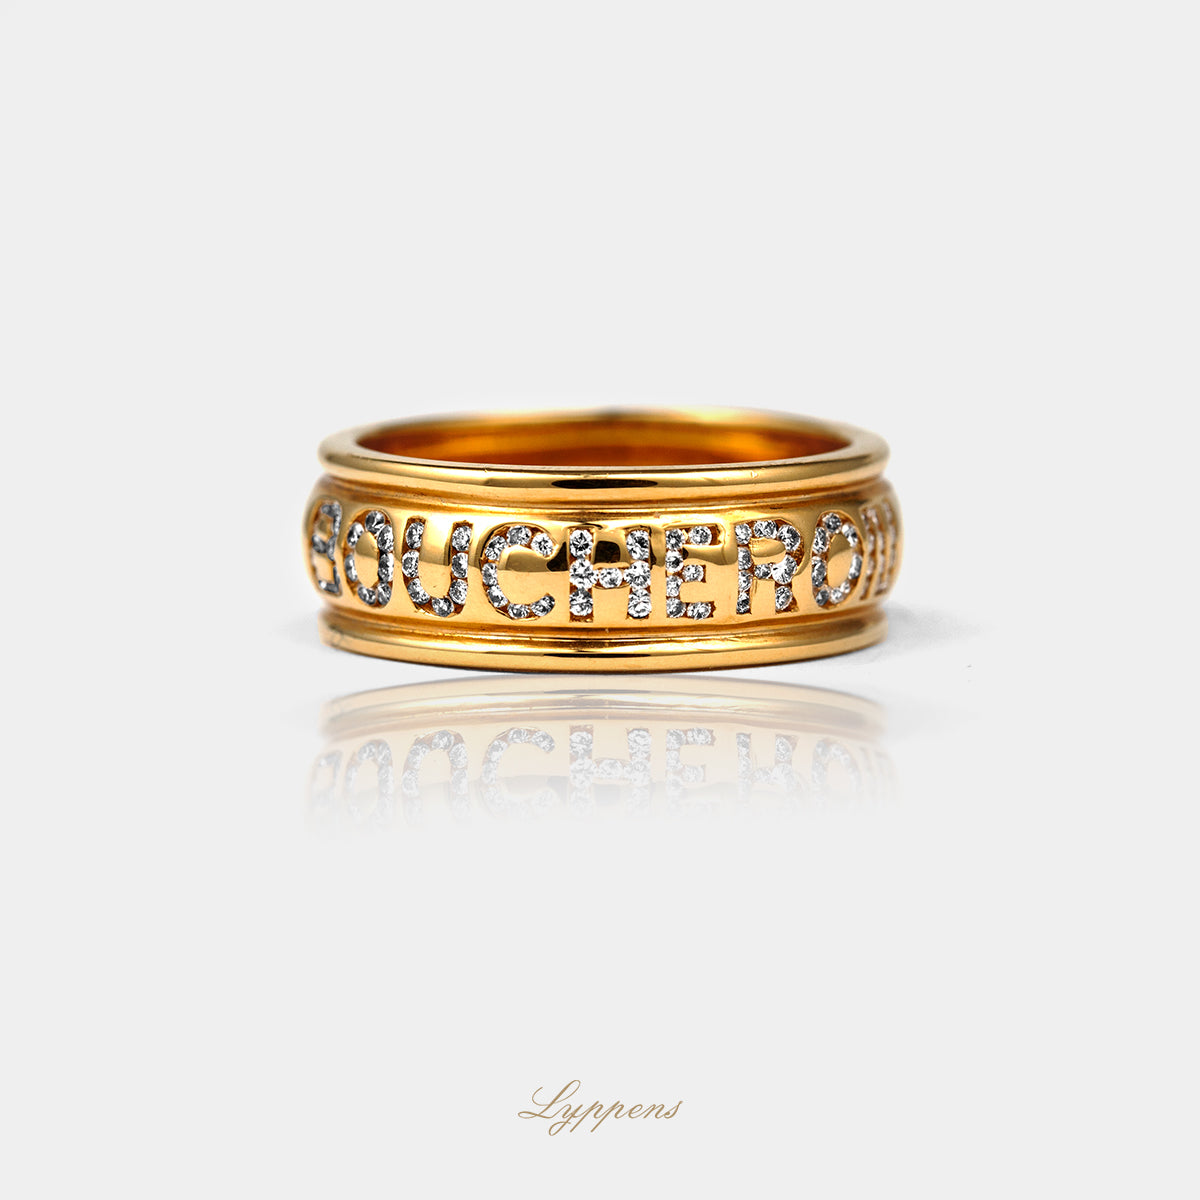 Liggende geelgouden boucheron ring, de naam boucheron is in de ring ingelegd met briljant geslepen diamant 